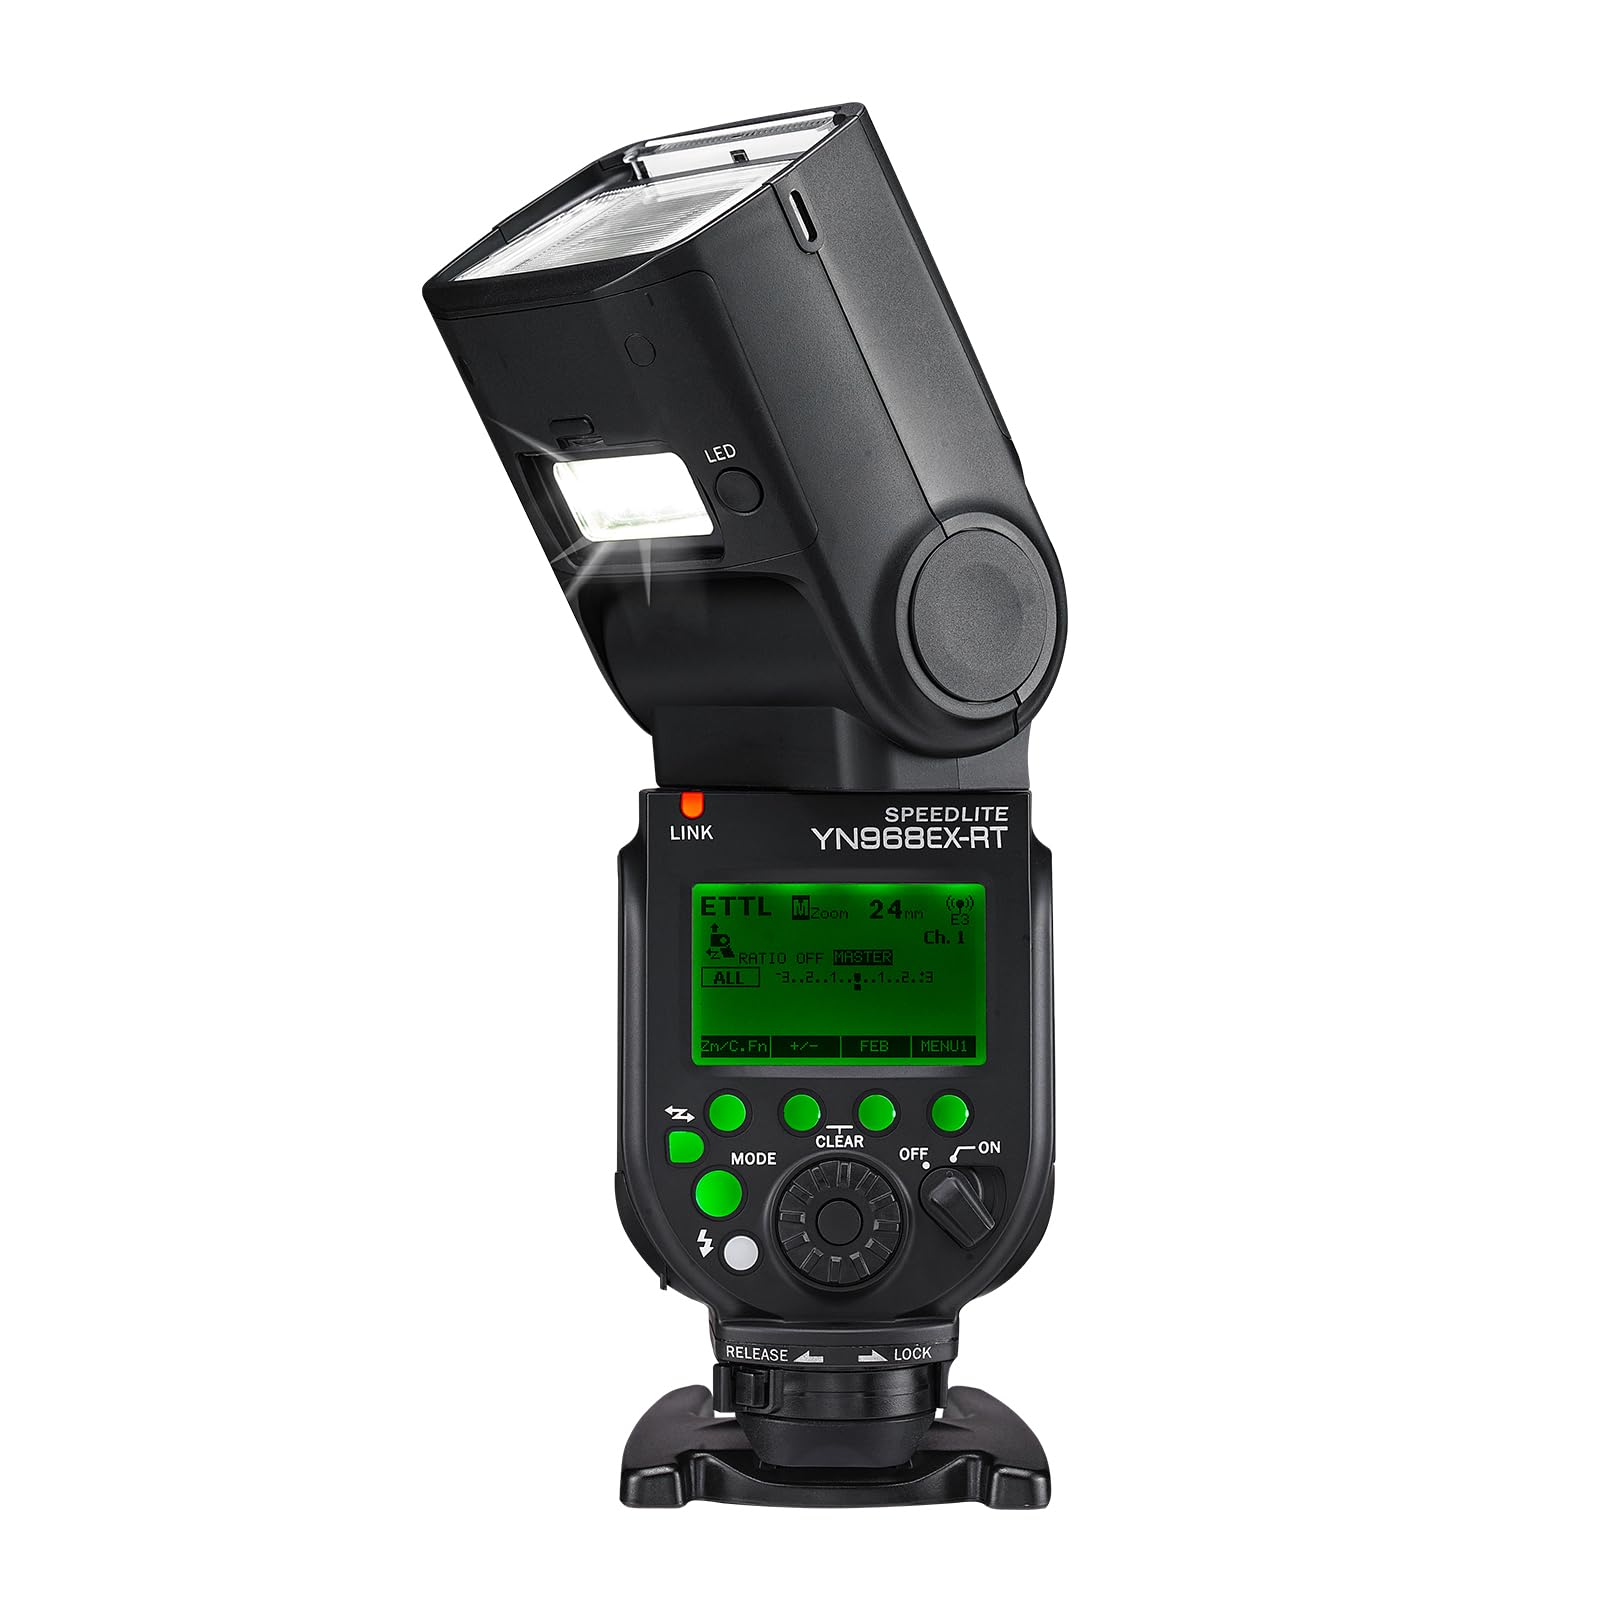 Flash Yongnuo Blitzauslöser für Canon – Master und yn968ex-rt HSS GN60 ISO 100